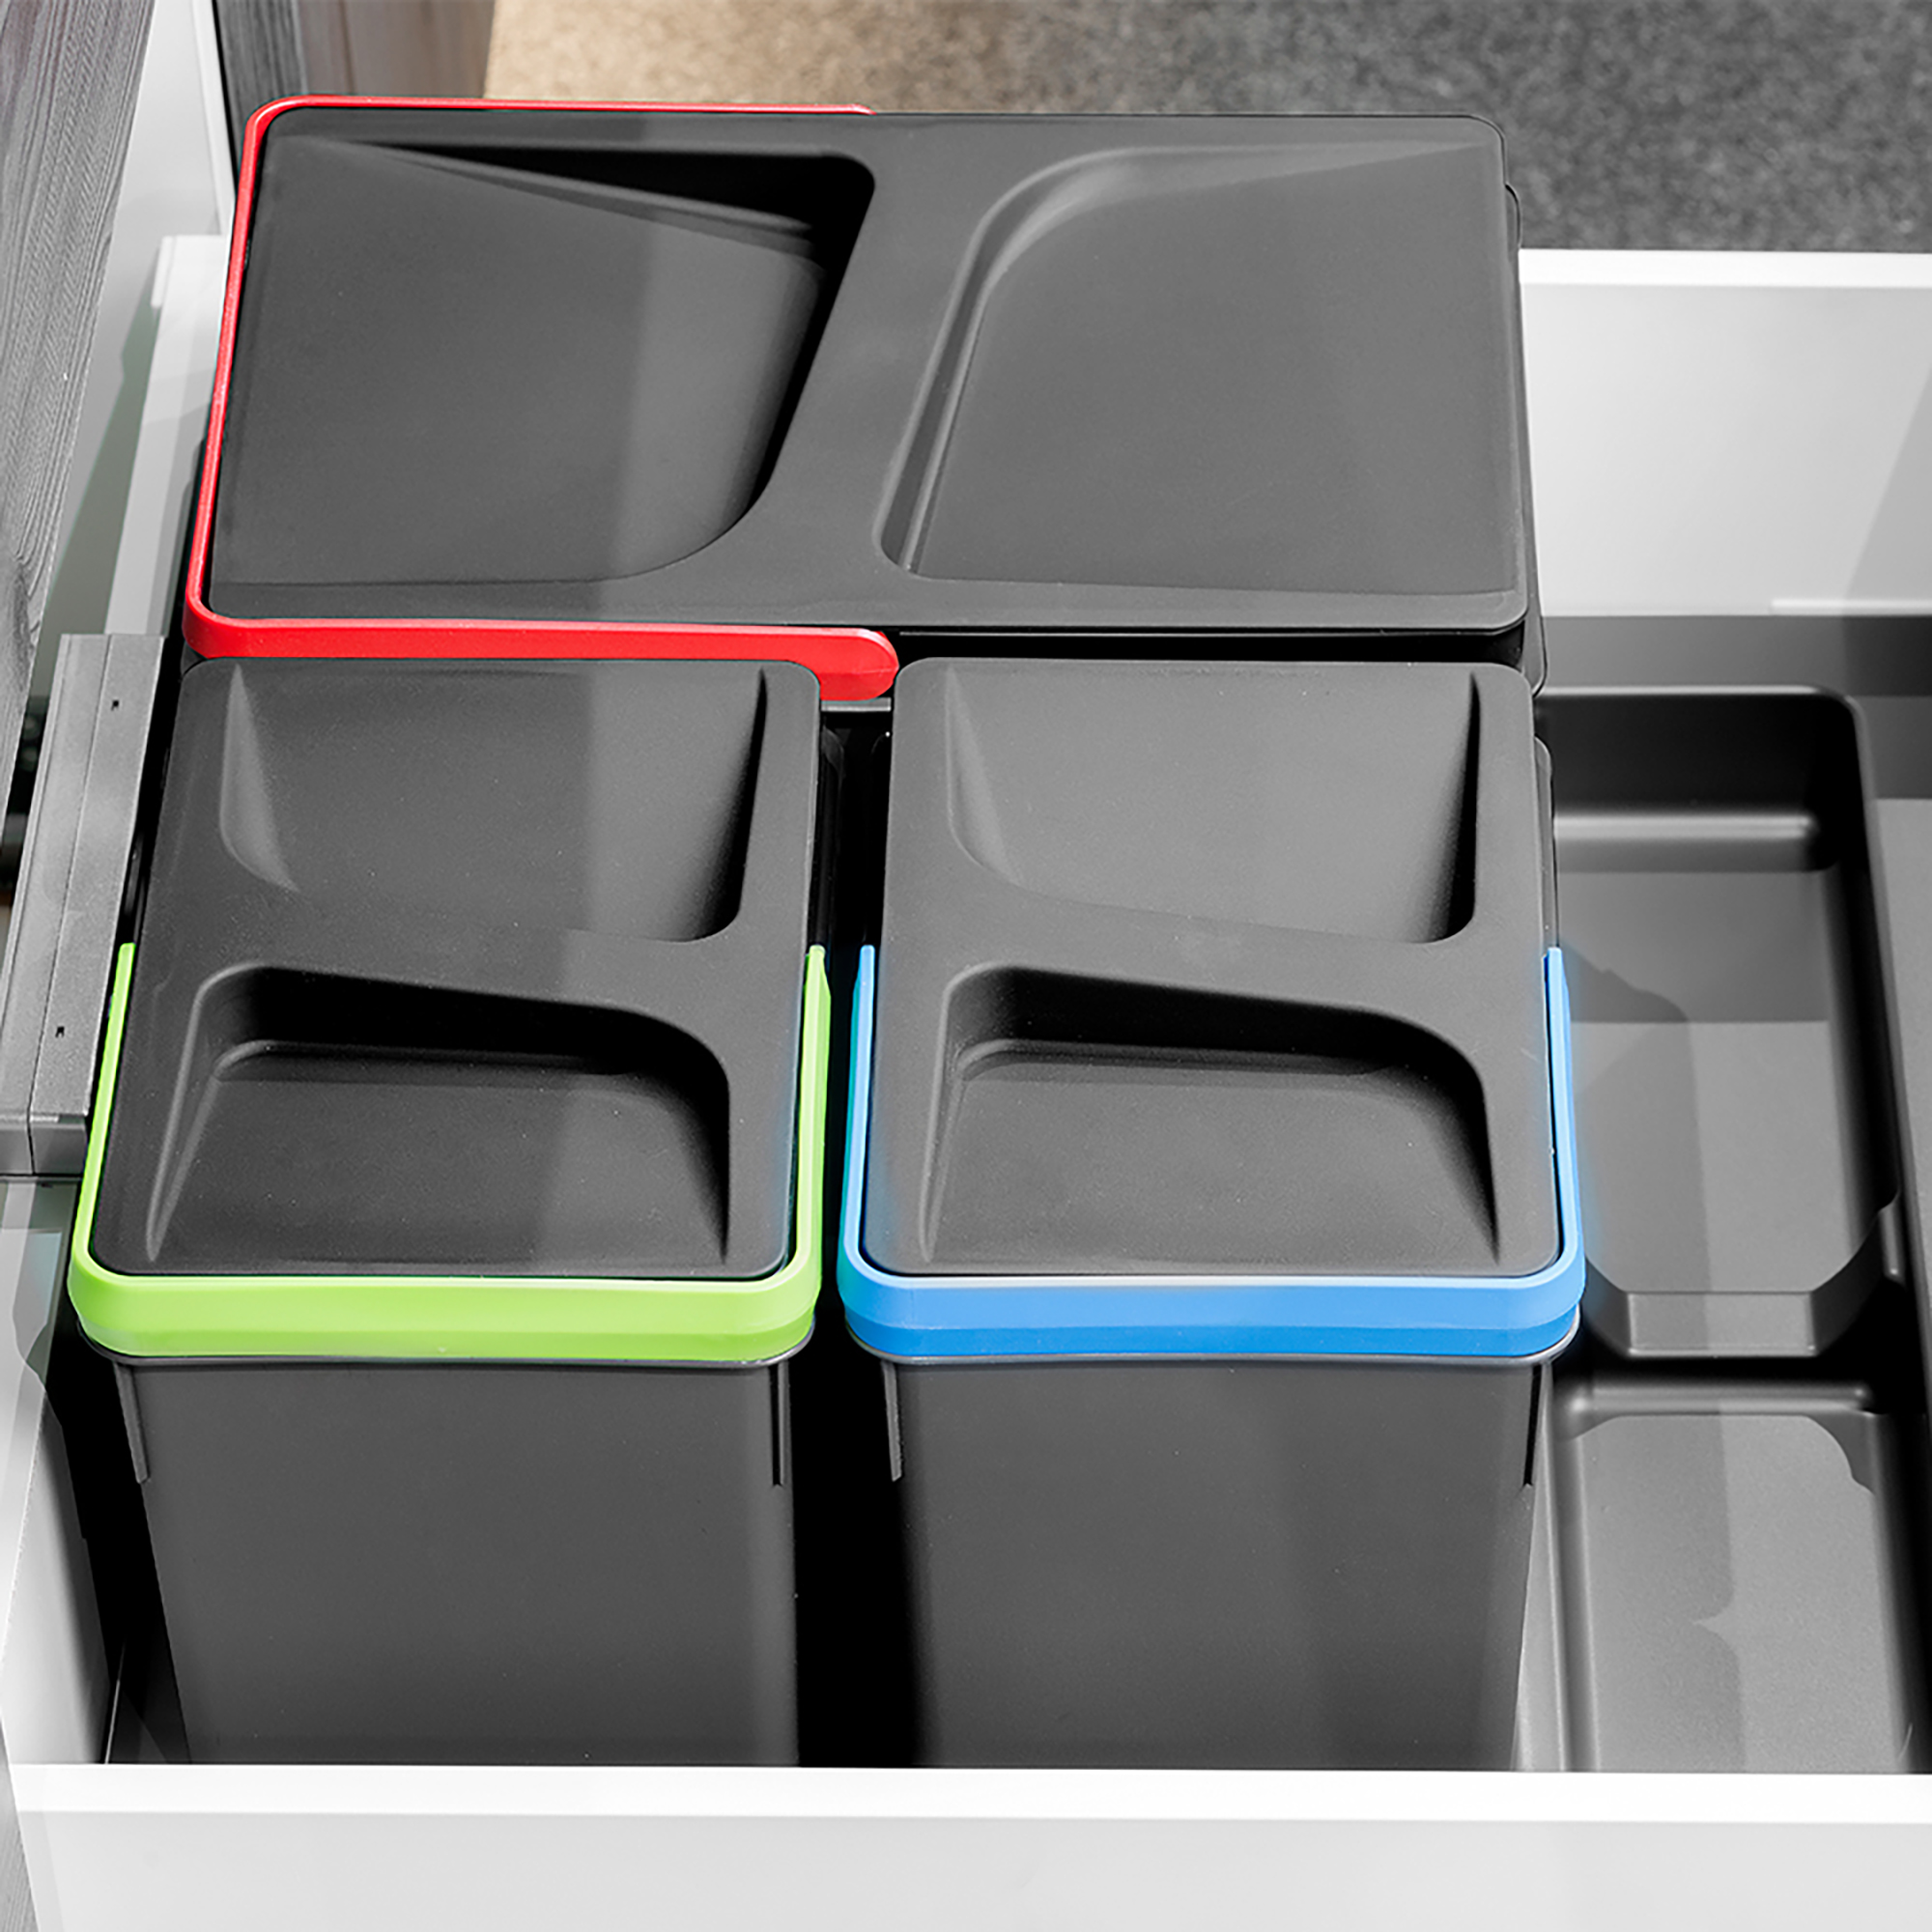  Poubelles pour tiroir de cuisine Recycle, Hauteur 266, 2x15 + 2x7, Plastique gris antracite, Plastique.